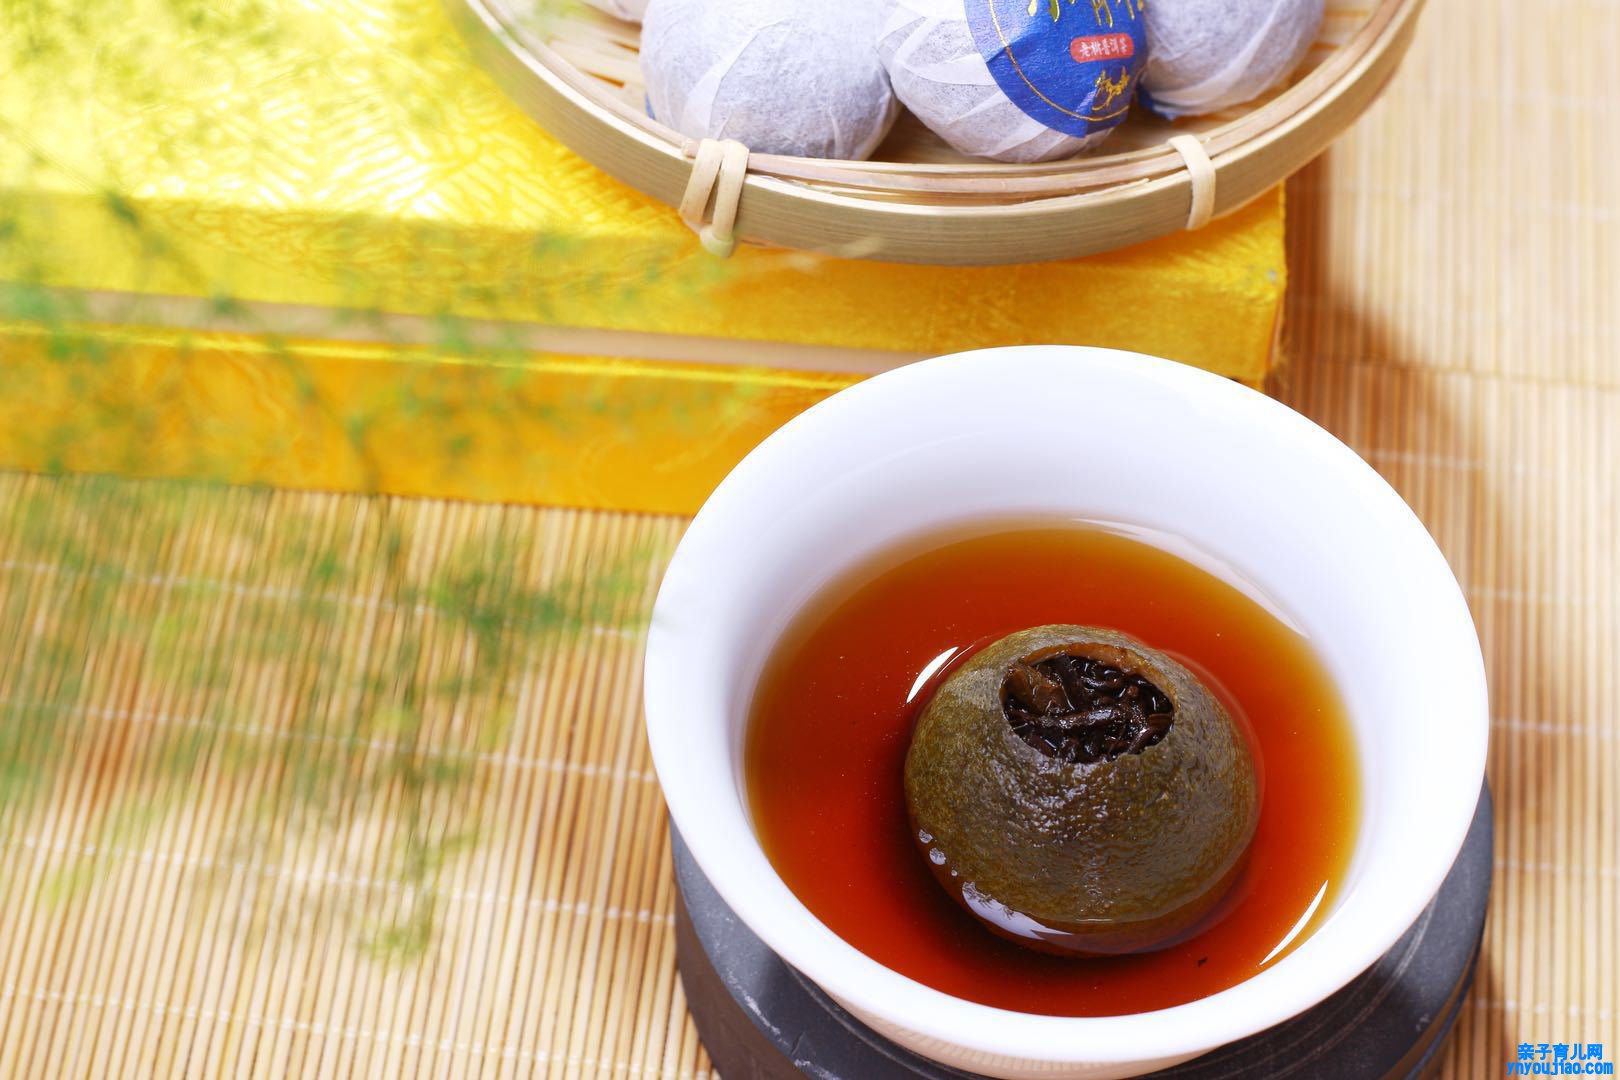  黑茶陈皮煮茶的功效作用是什么 喝陈皮黑茶对身体的好处